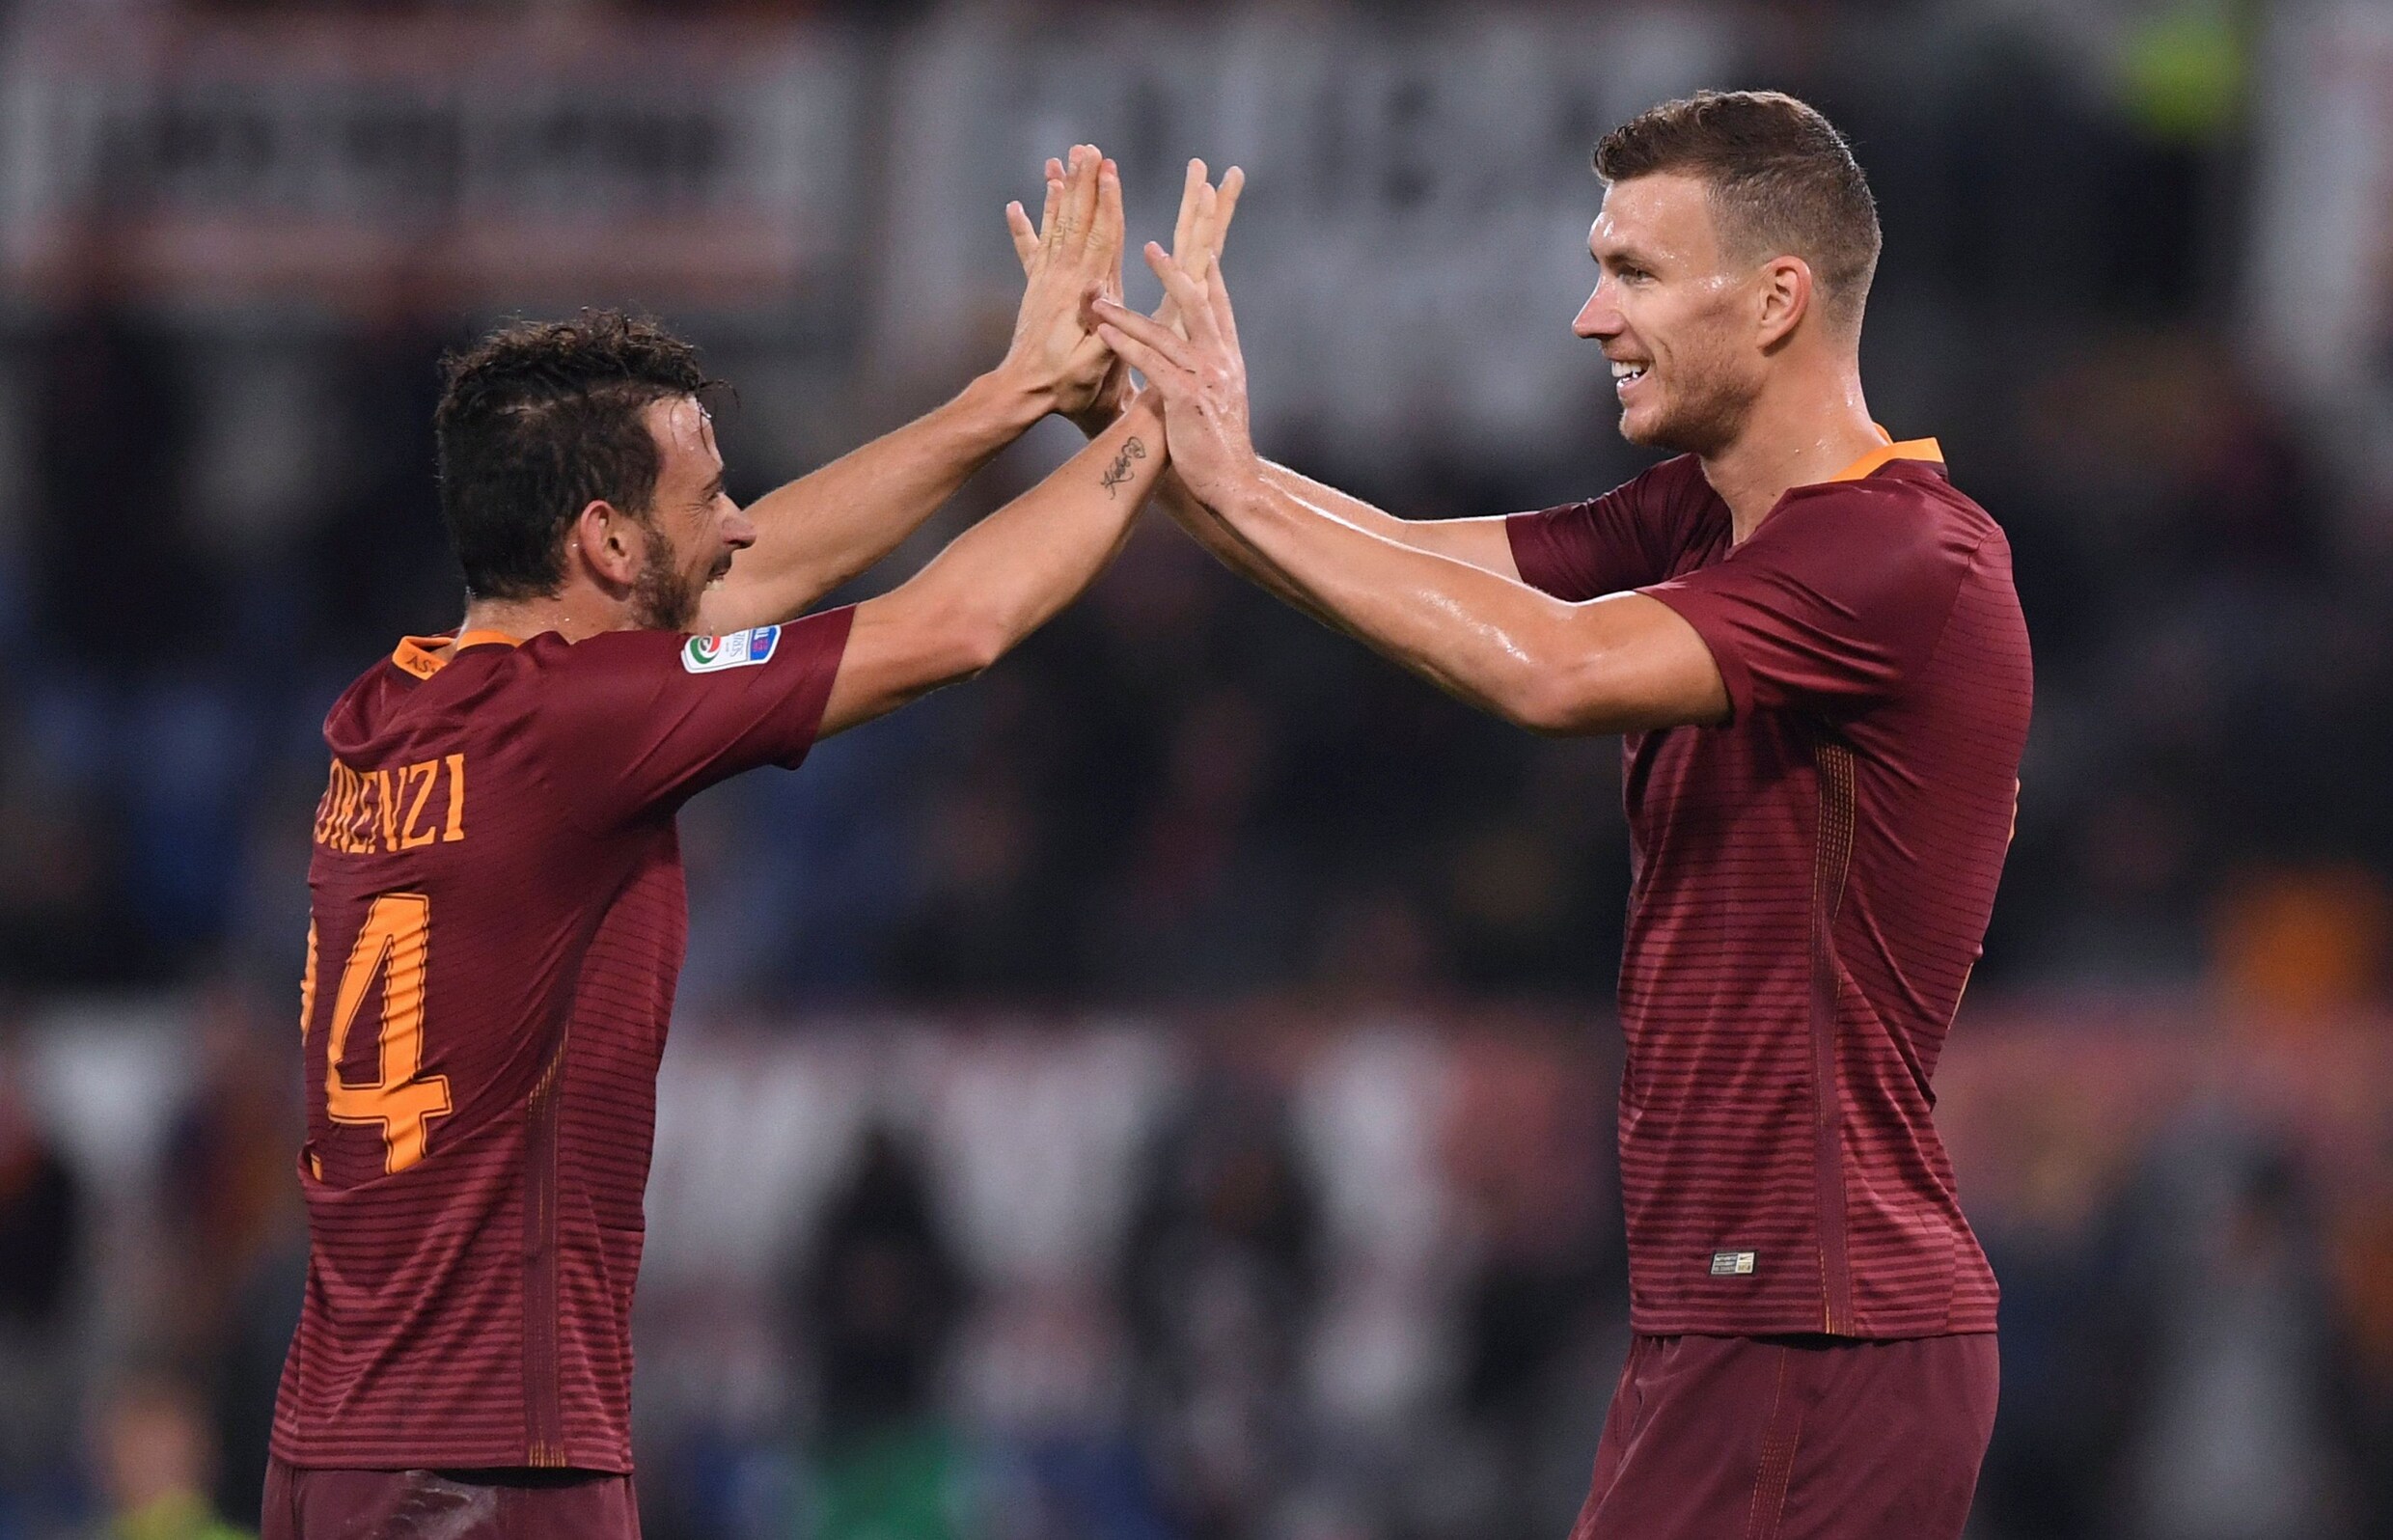 AS Roma - met Nainggolan, zonder Vermaelen - nadert tot op twee punten van Juventus